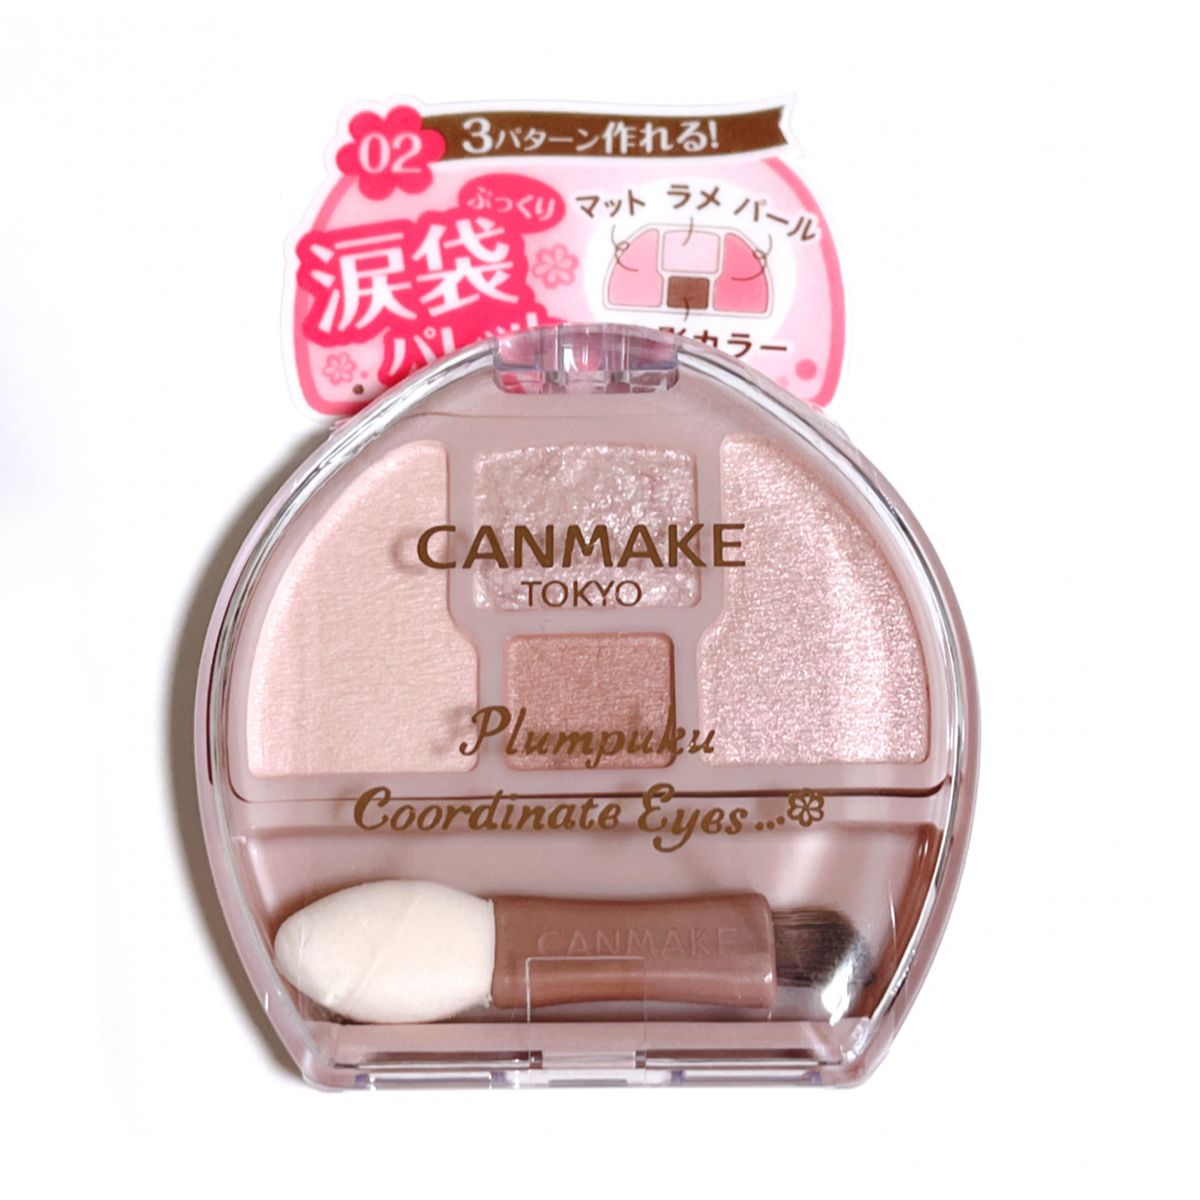 CANMAKE キャンメイク プランぷくコーデアイズ 1.4g （02 サクラプランぷく）涙袋 新品未開封 未使用